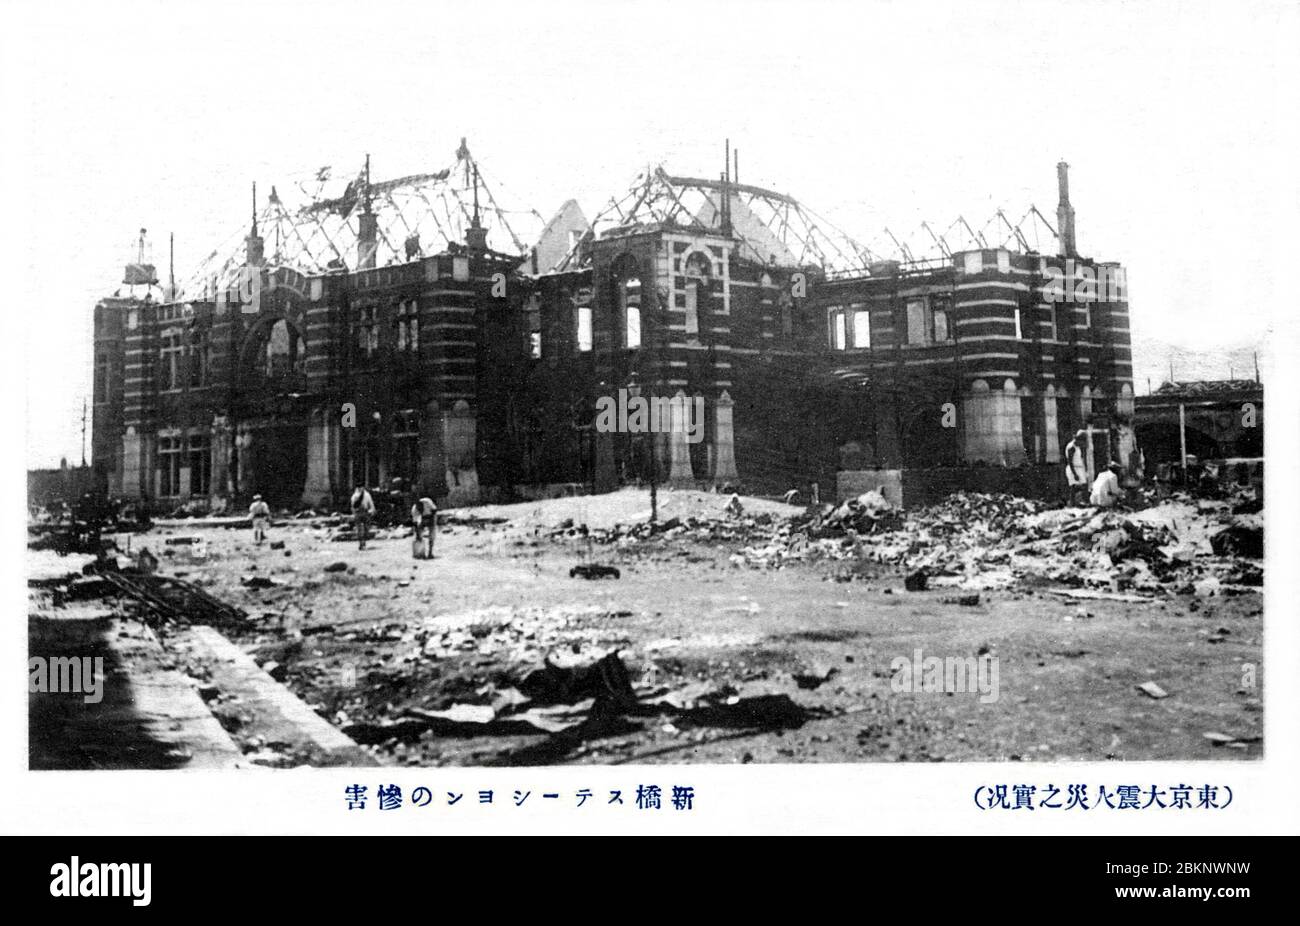 [ Japon des années 1920 - Grand tremblement de terre de Kanto ] — les ruines de la deuxième station Shinbashi (également Shimbashi) après sa destruction par le grand tremblement de terre de Kanto du 1er septembre 1923 (Taisho 12). L'impressionnant bâtiment en briques rouges a été achevé à l'ouest de la station Shinbashi d'origine en 1914 (Taisho, 3). Il a été utilisé jusqu'en 1923 (Taisho 12), quand il a été détruit. carte postale vintage du xxe siècle. Banque D'Images